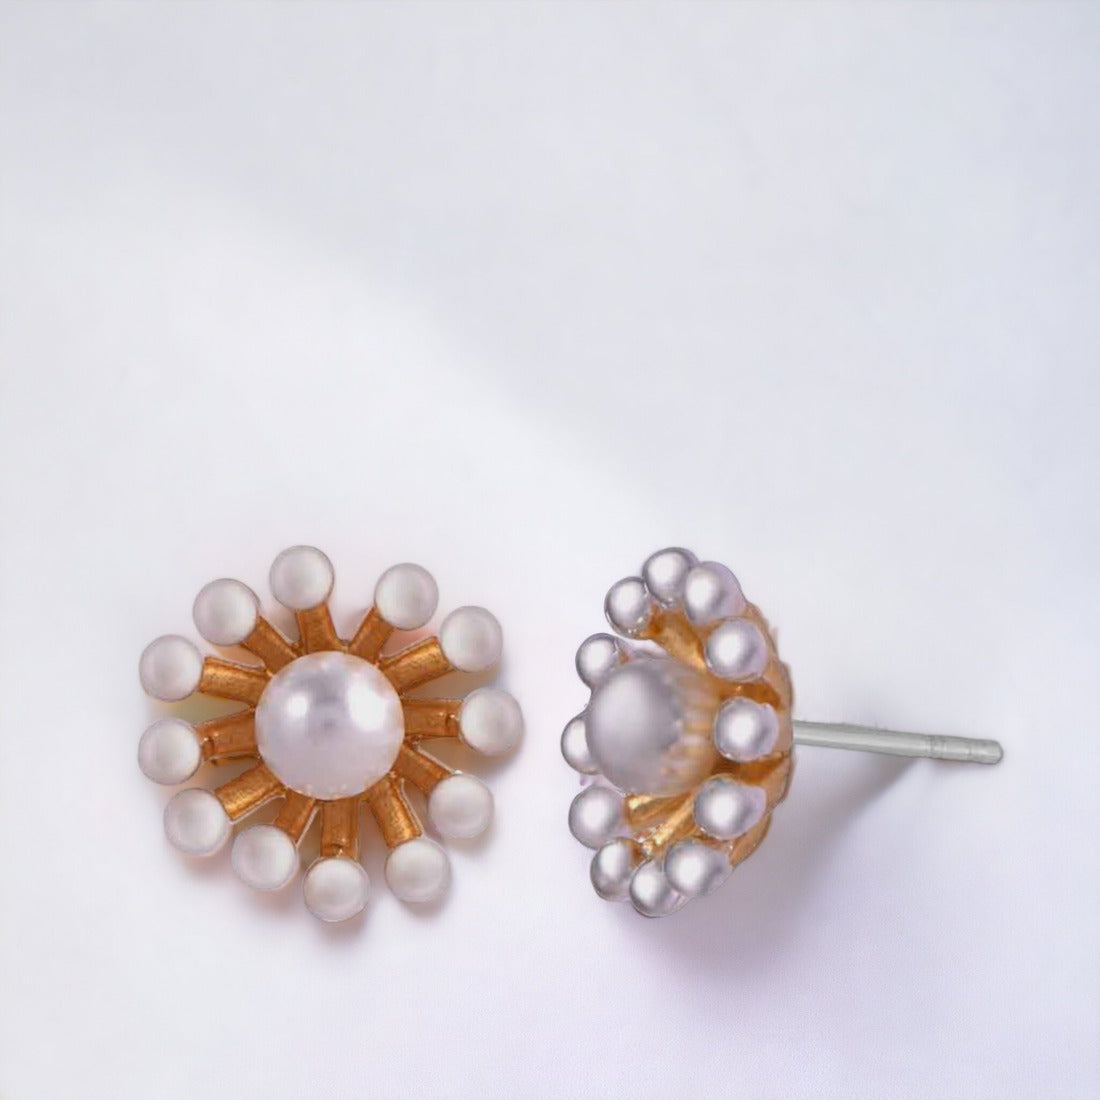 Sunflower Pendant Chain & Earring Set For Women And Girls